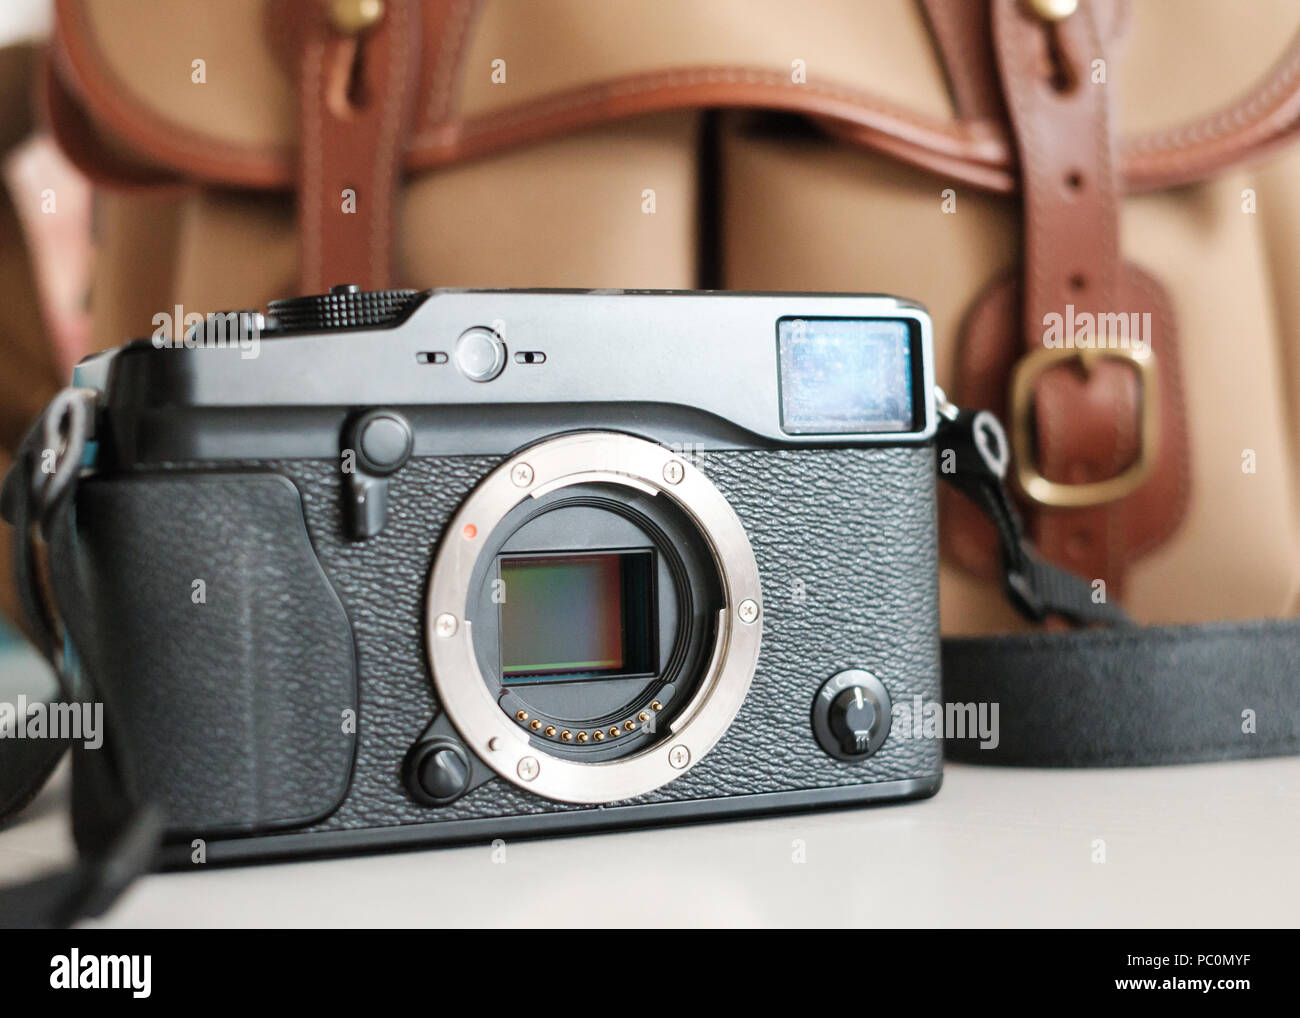 Fuji Mirrorless telecamera del sistema con sensore visibile, con billingham fotocamera borsa Foto Stock